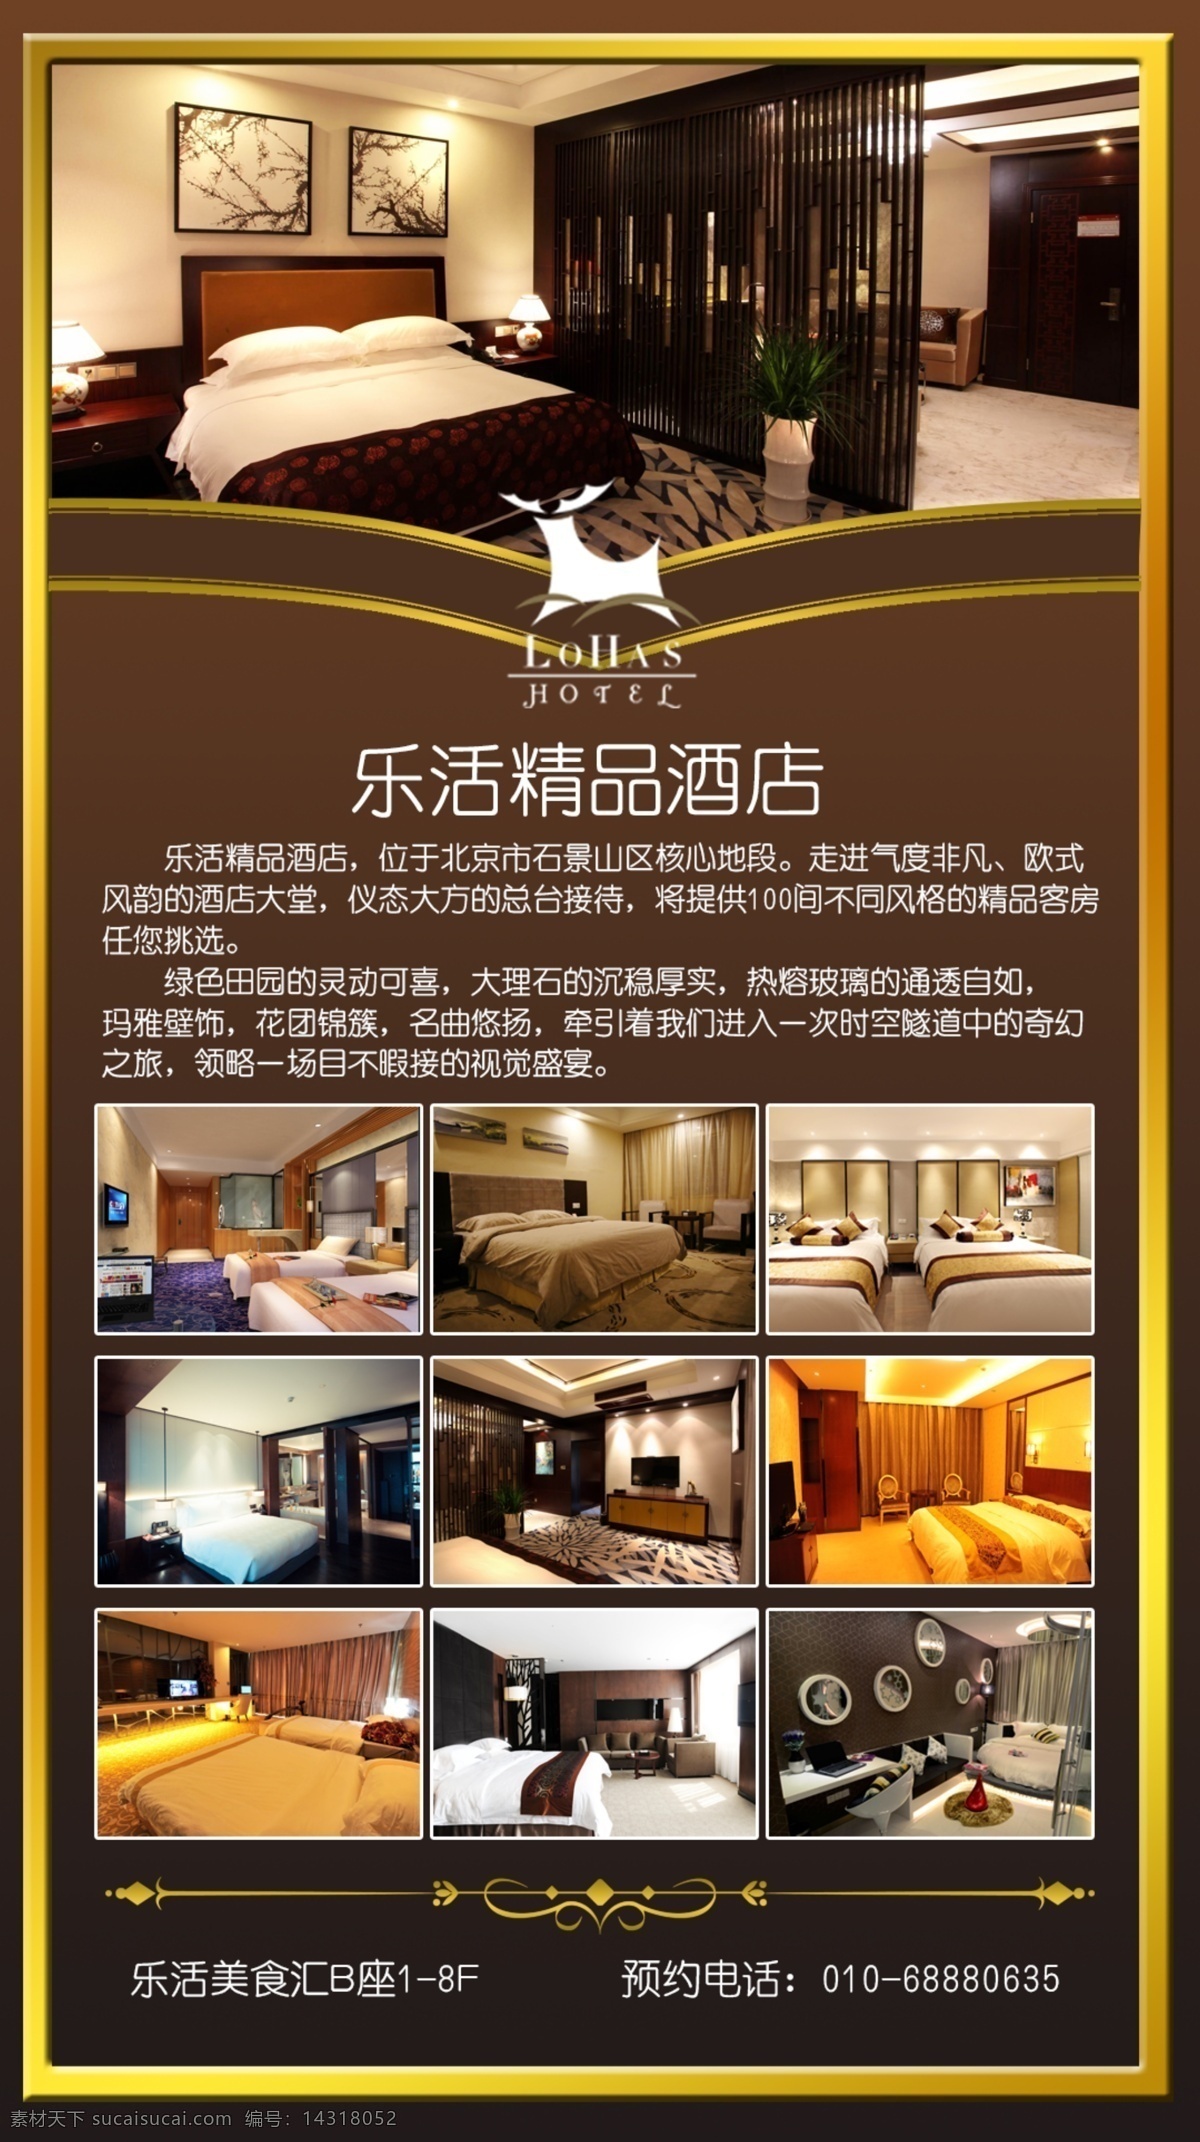 广告机 酒店 酒店宣传 酒店单页 酒店房间 酒店介绍 精品酒店